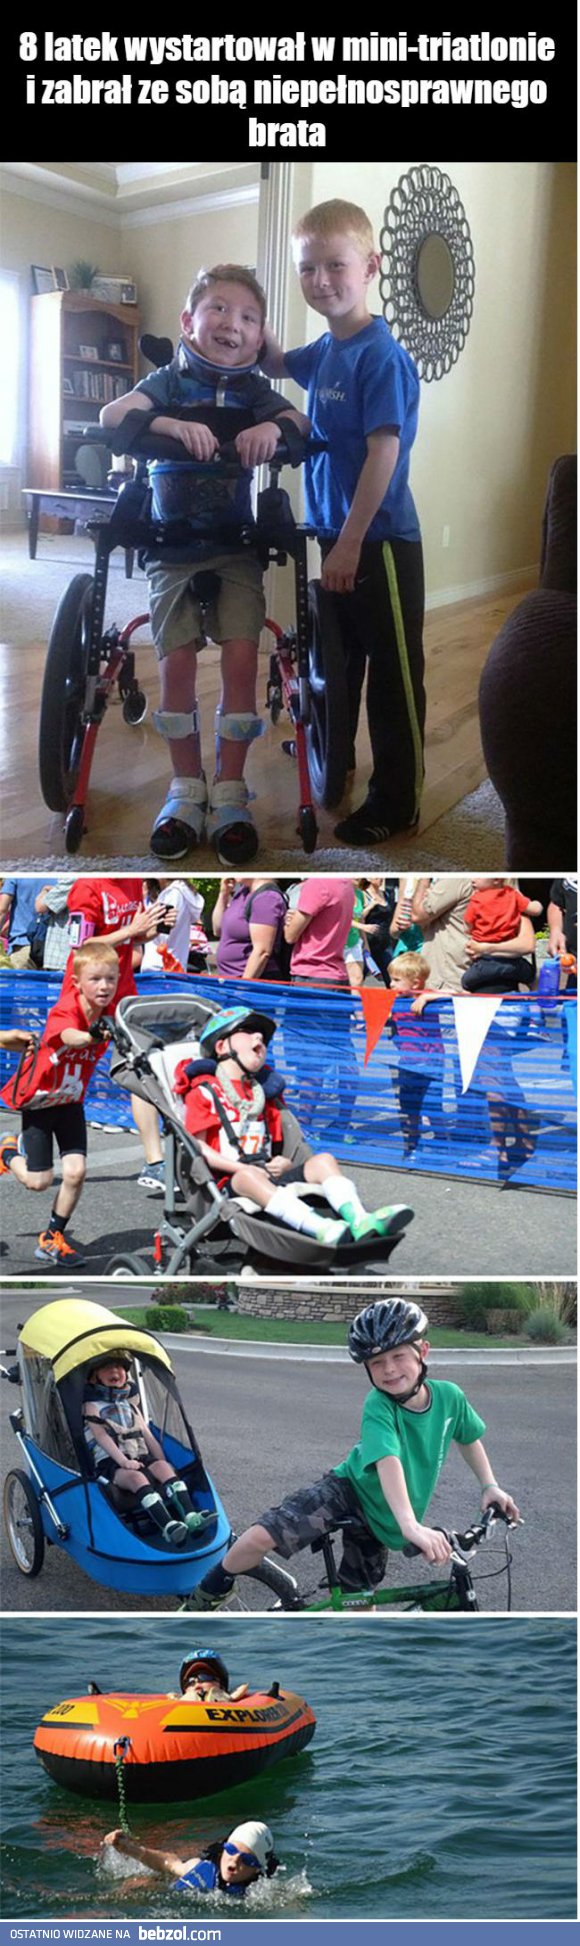 8-latek wystartował w mini-triatlonie z niepełnosprawnym bratem